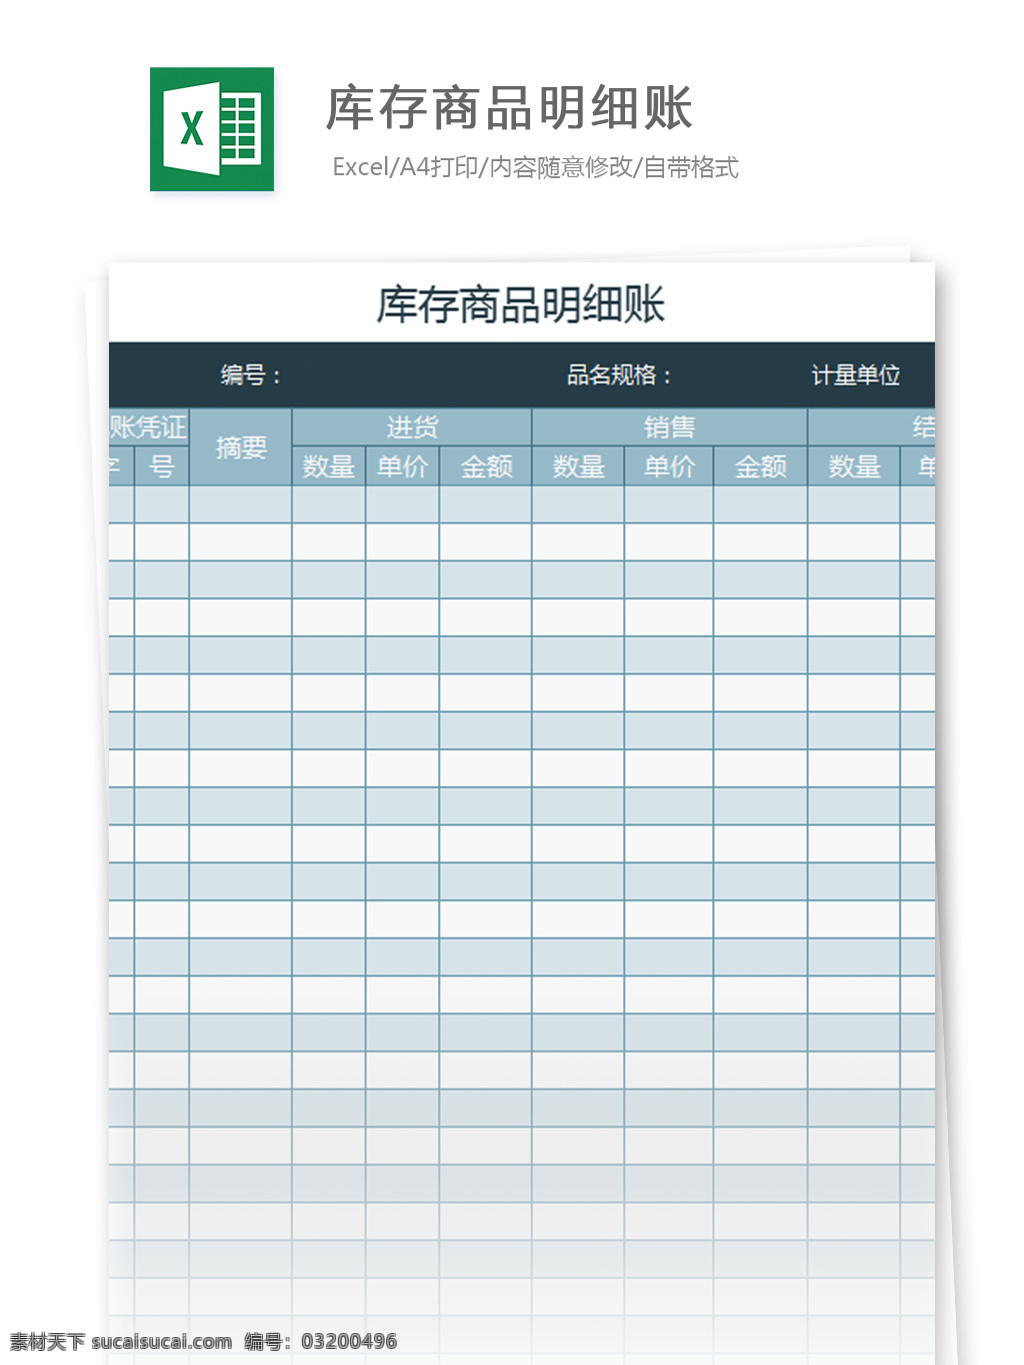 库存 商品 明细账 excel 模板 表格模板 图表 表格设计 表格